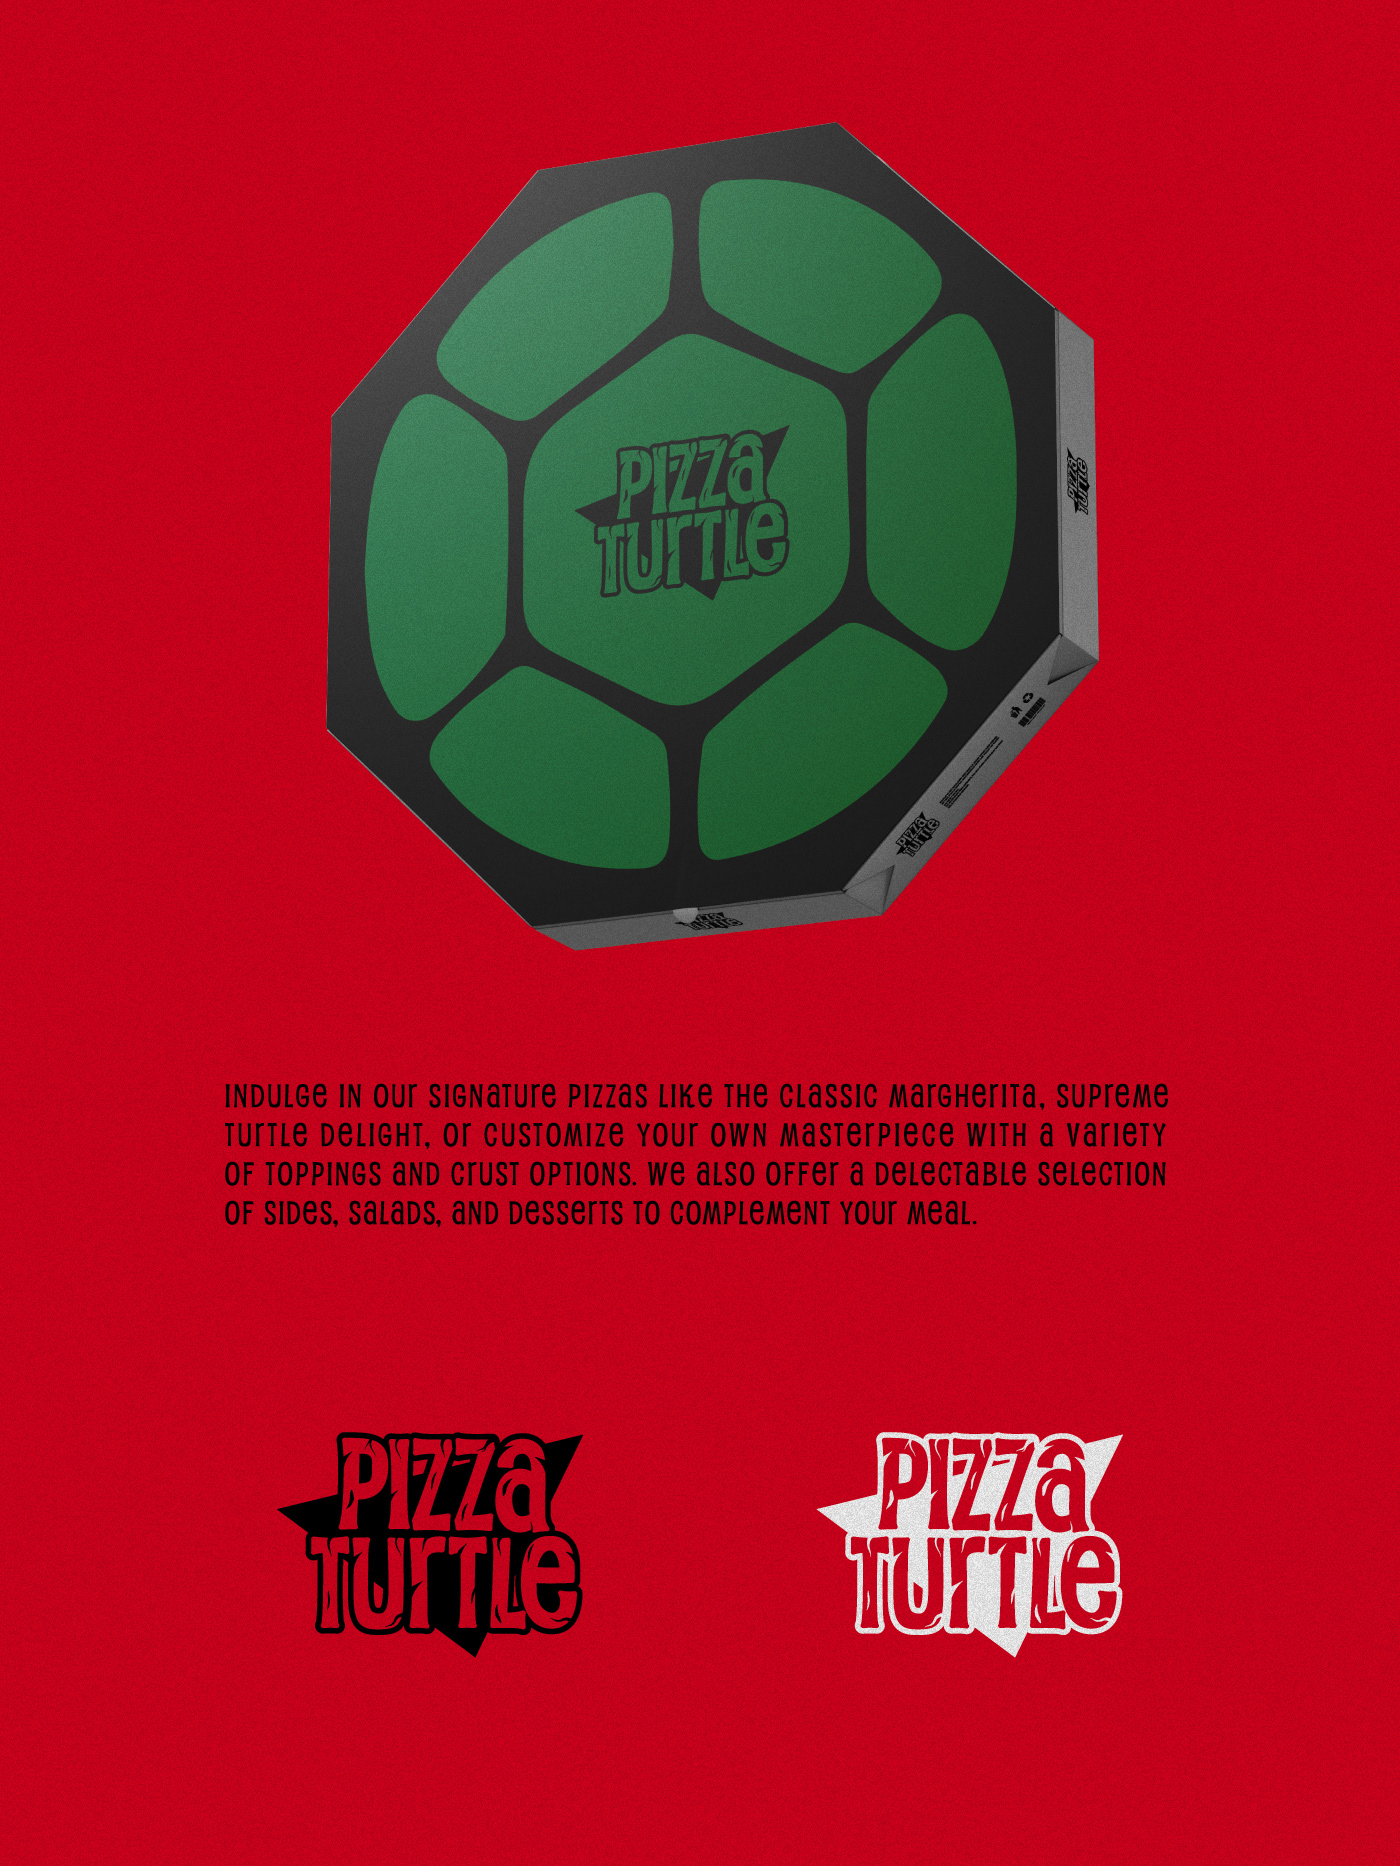 Pizza restaurant Ninja Turtles logo brand identity visual Packaging Social media post Advertising  designer